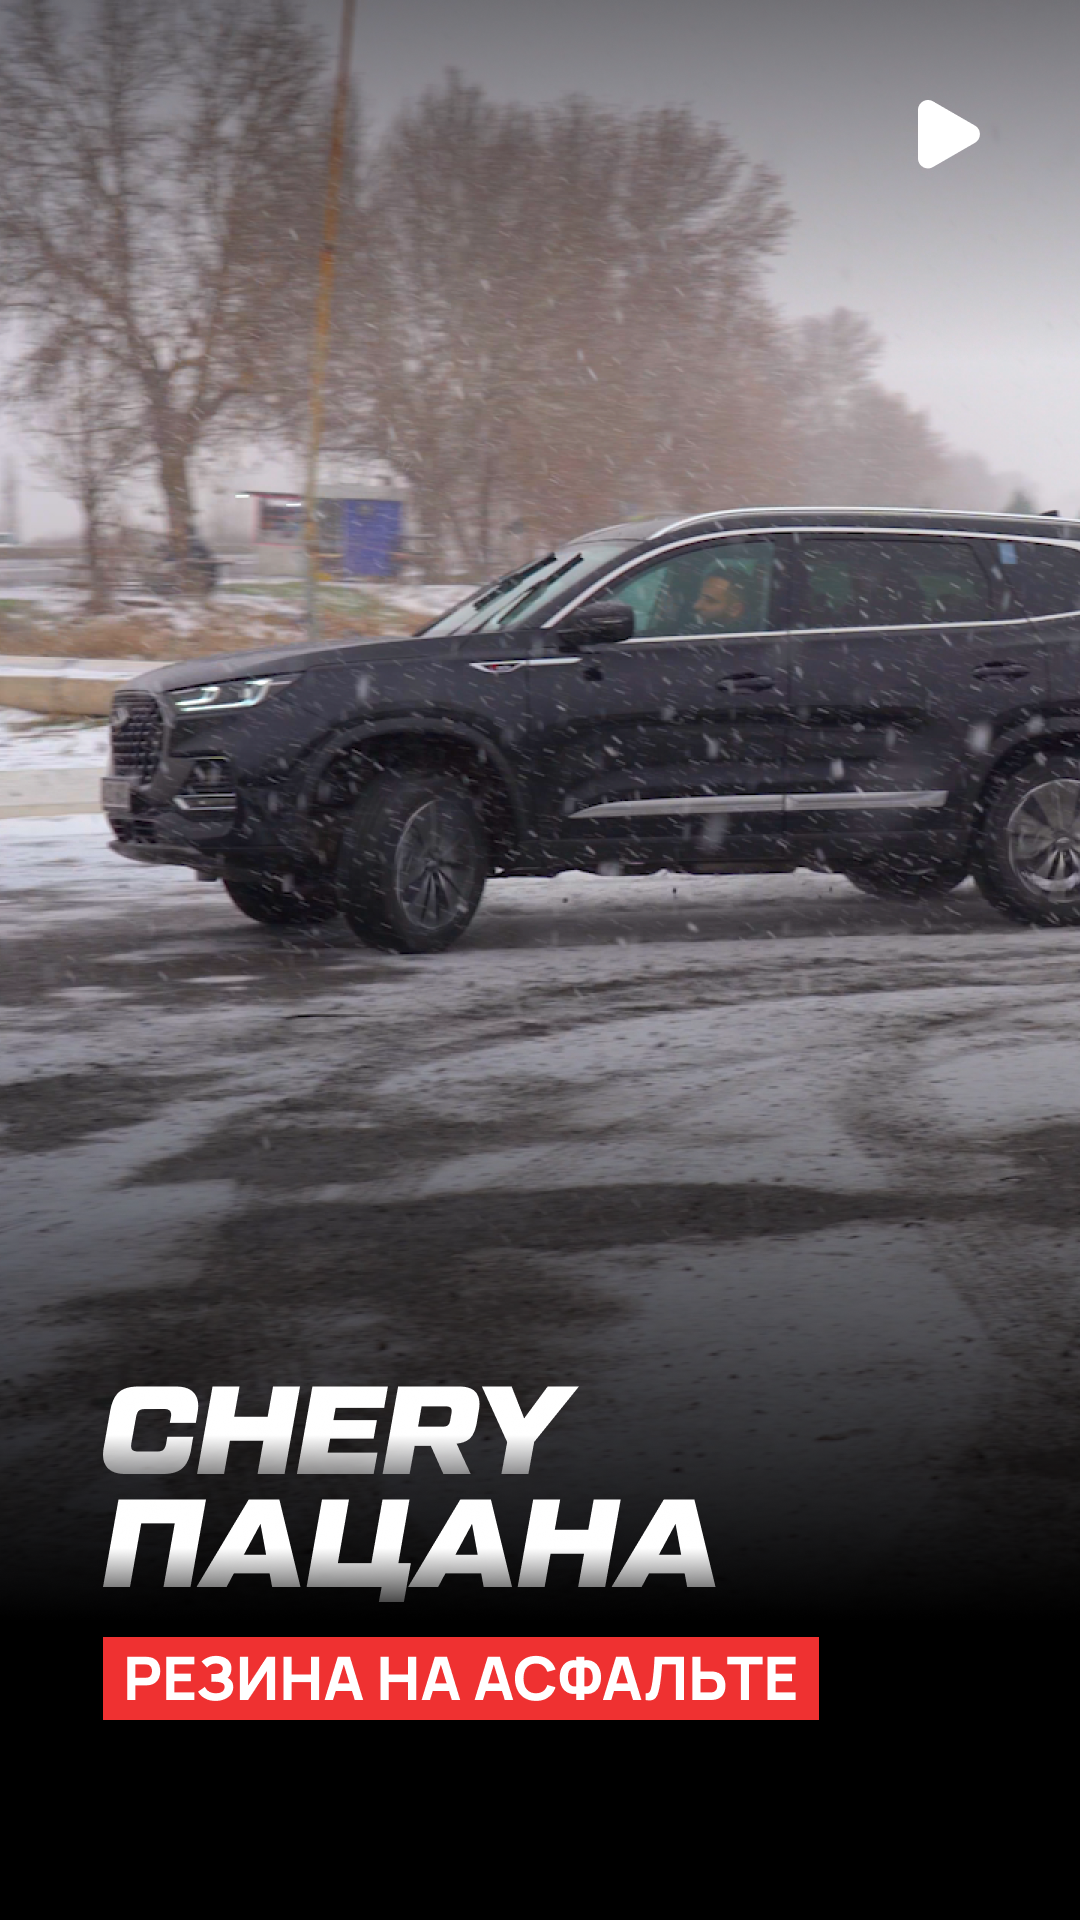 В минувшие выходные бренд Chery организовал внушительное автомобильное мероприятие